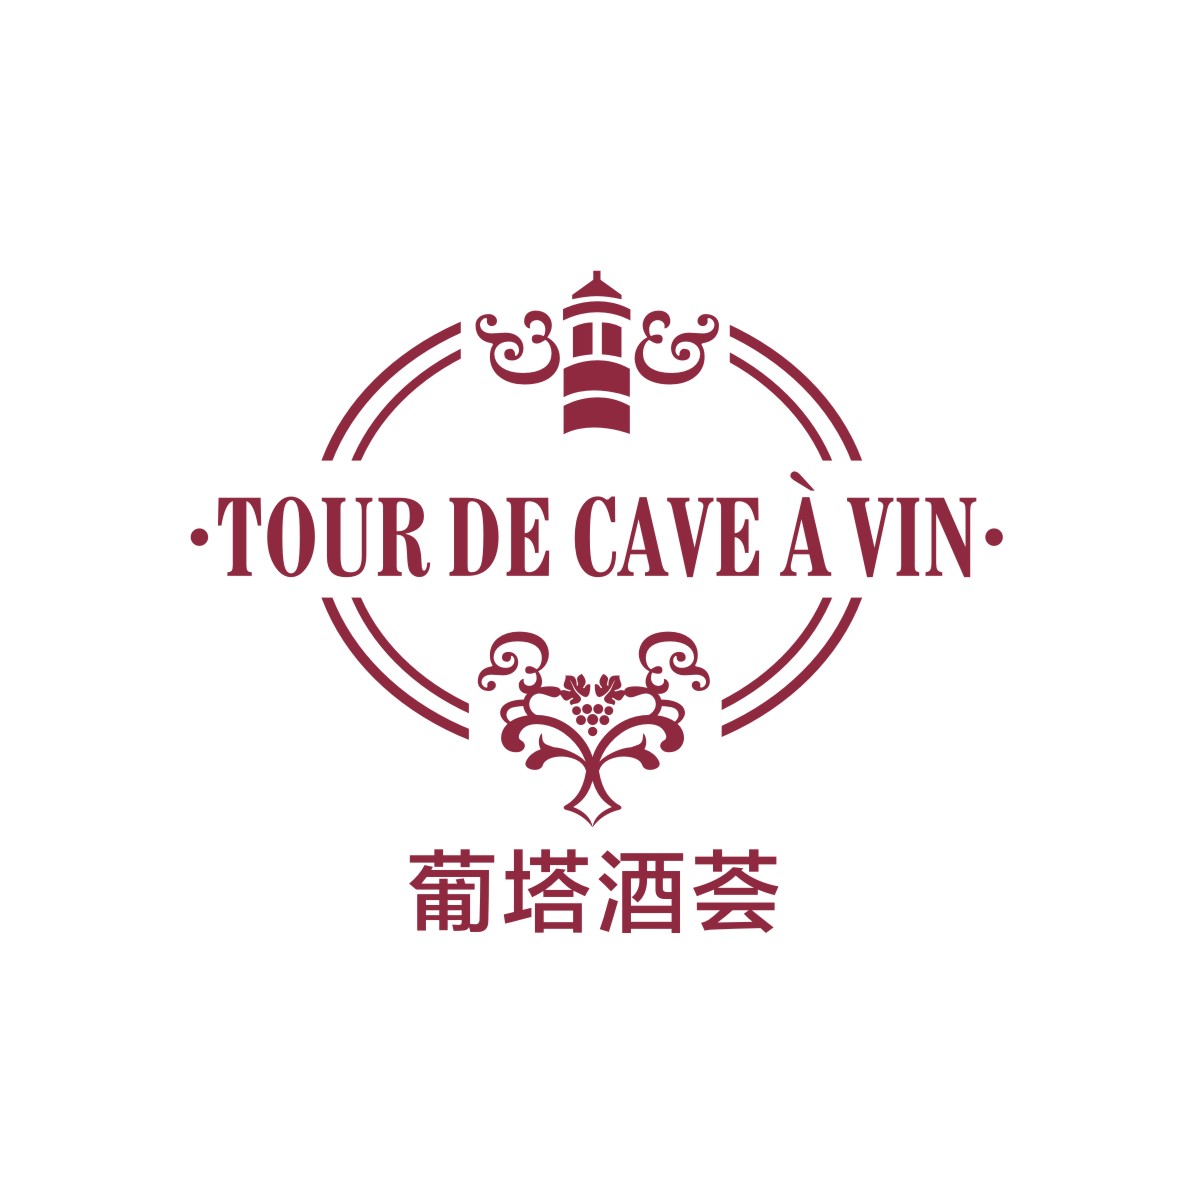 刘轶商标葡塔酒荟 TOUR DE CAVE A VIN（33类）商标买卖平台报价，上哪个平台最省钱？